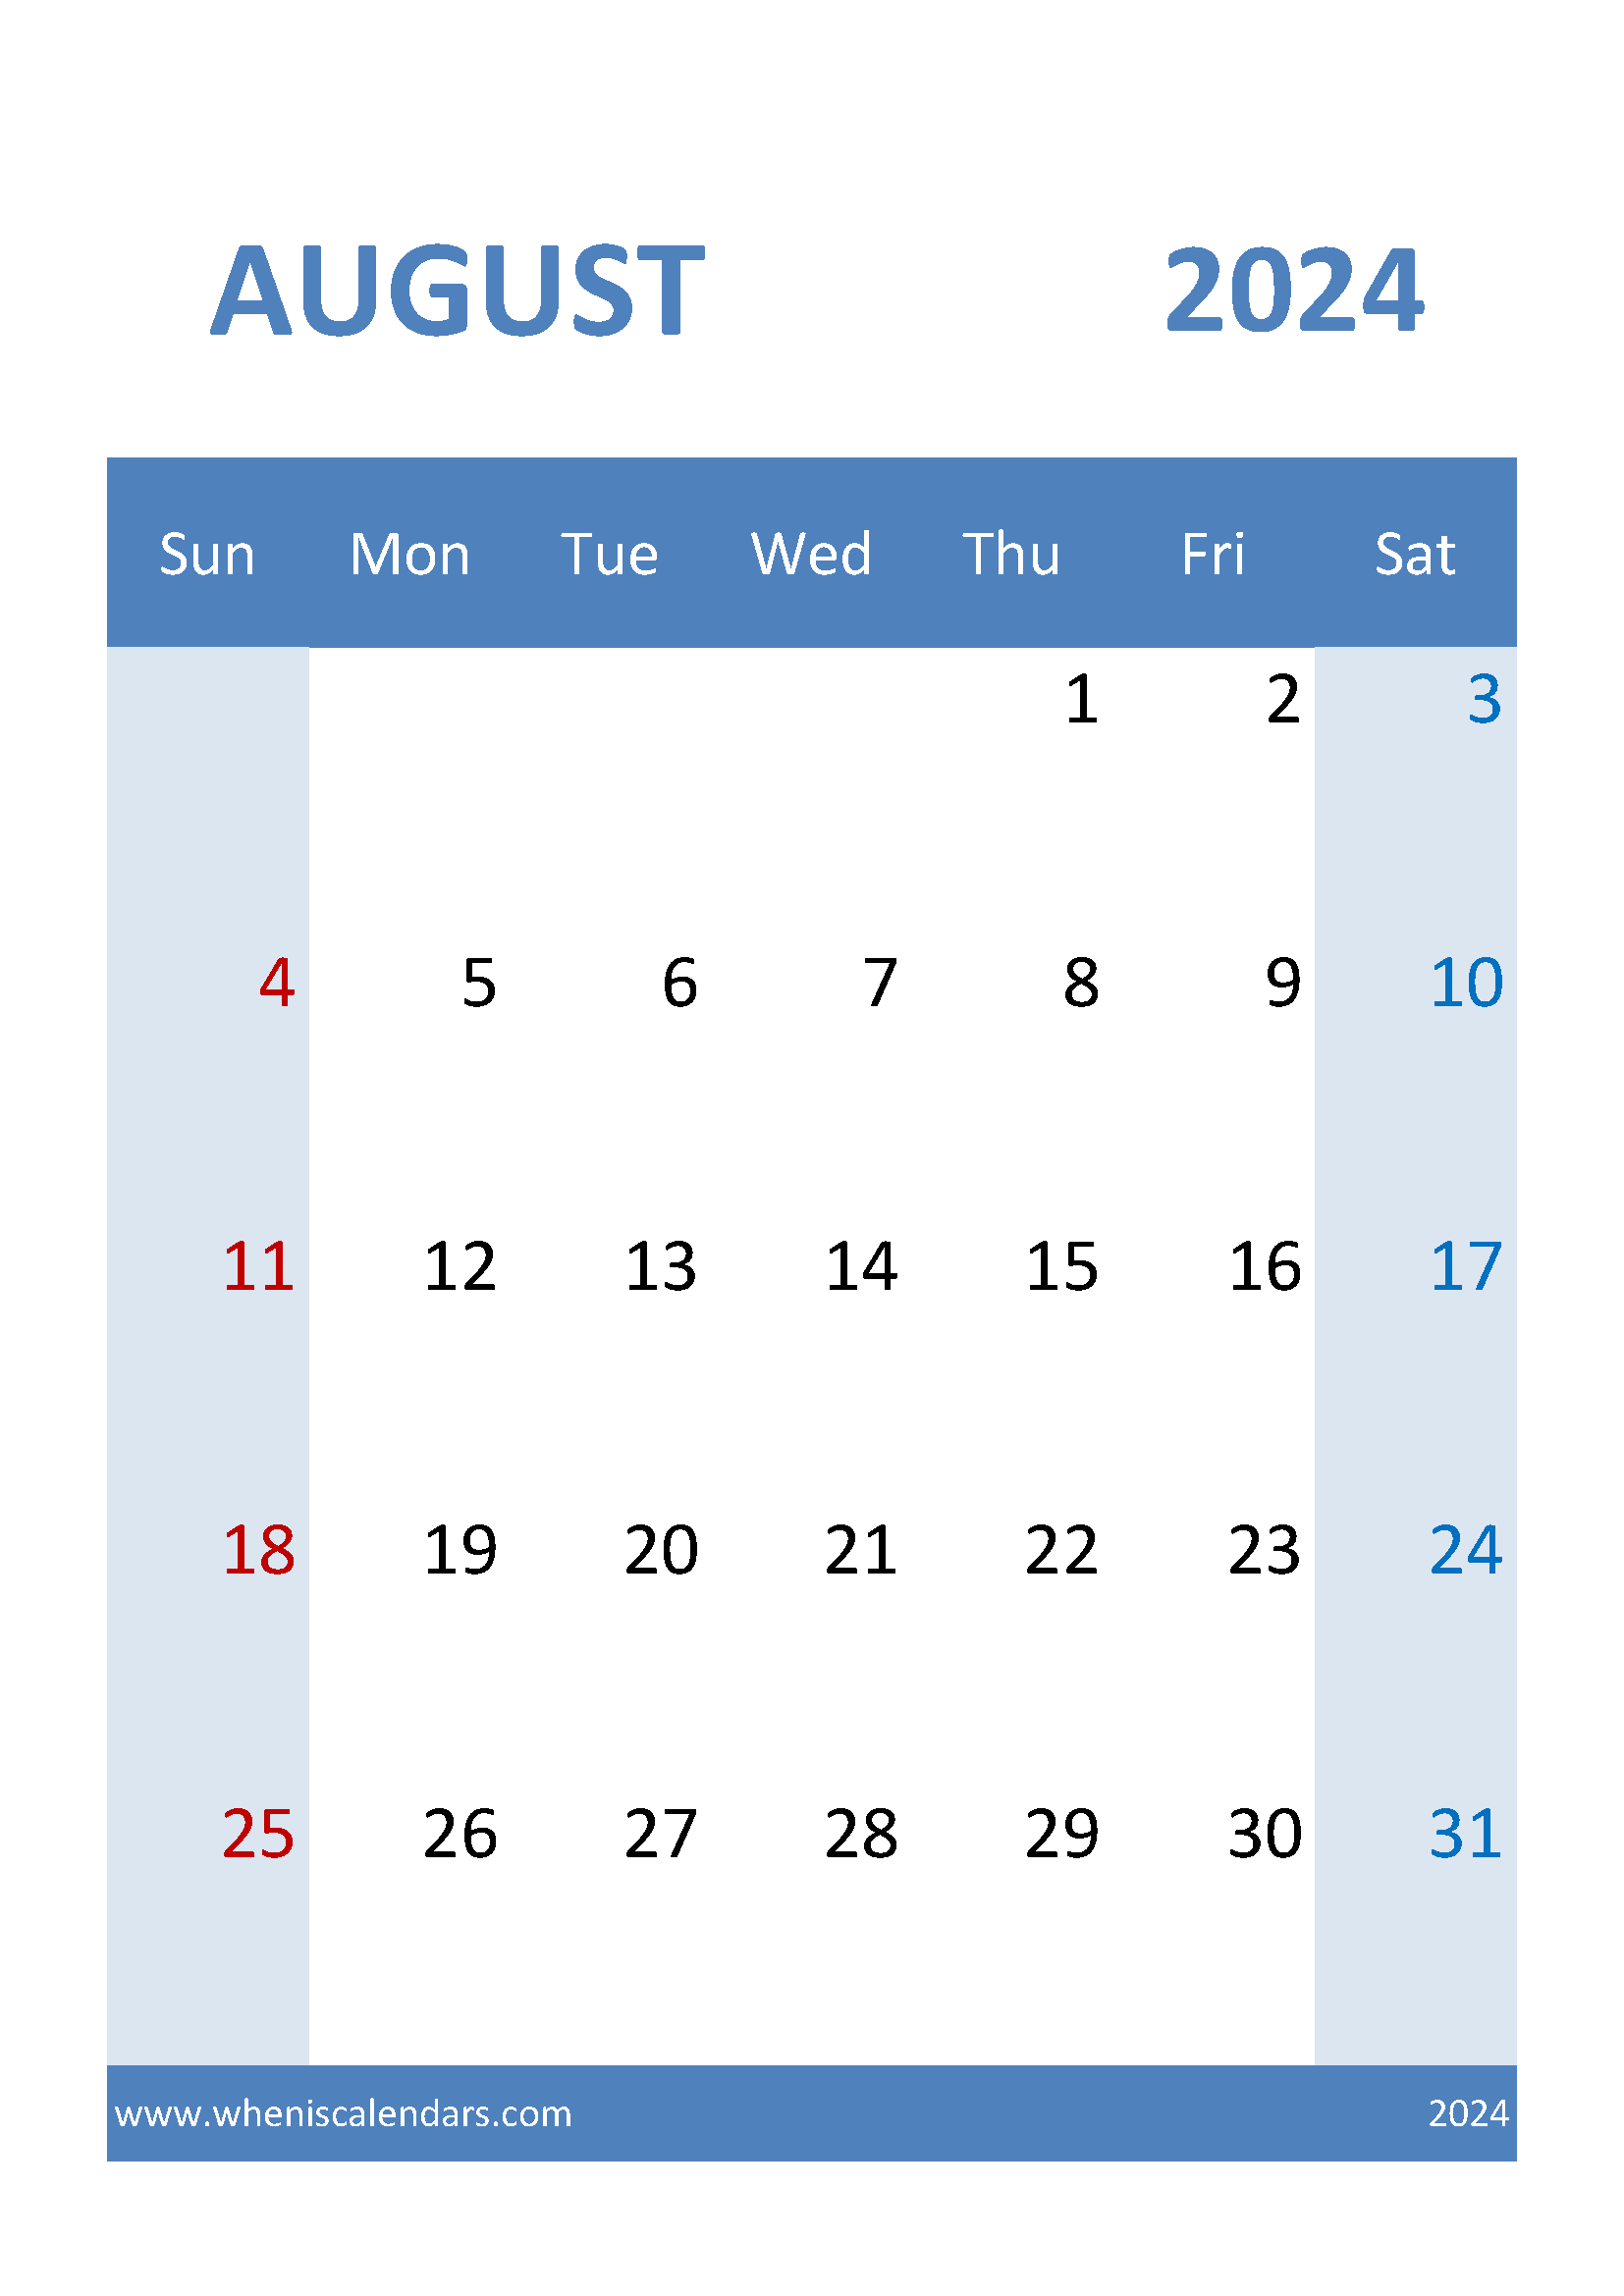 August 2024 Calendar Template excel Monthly Calendar